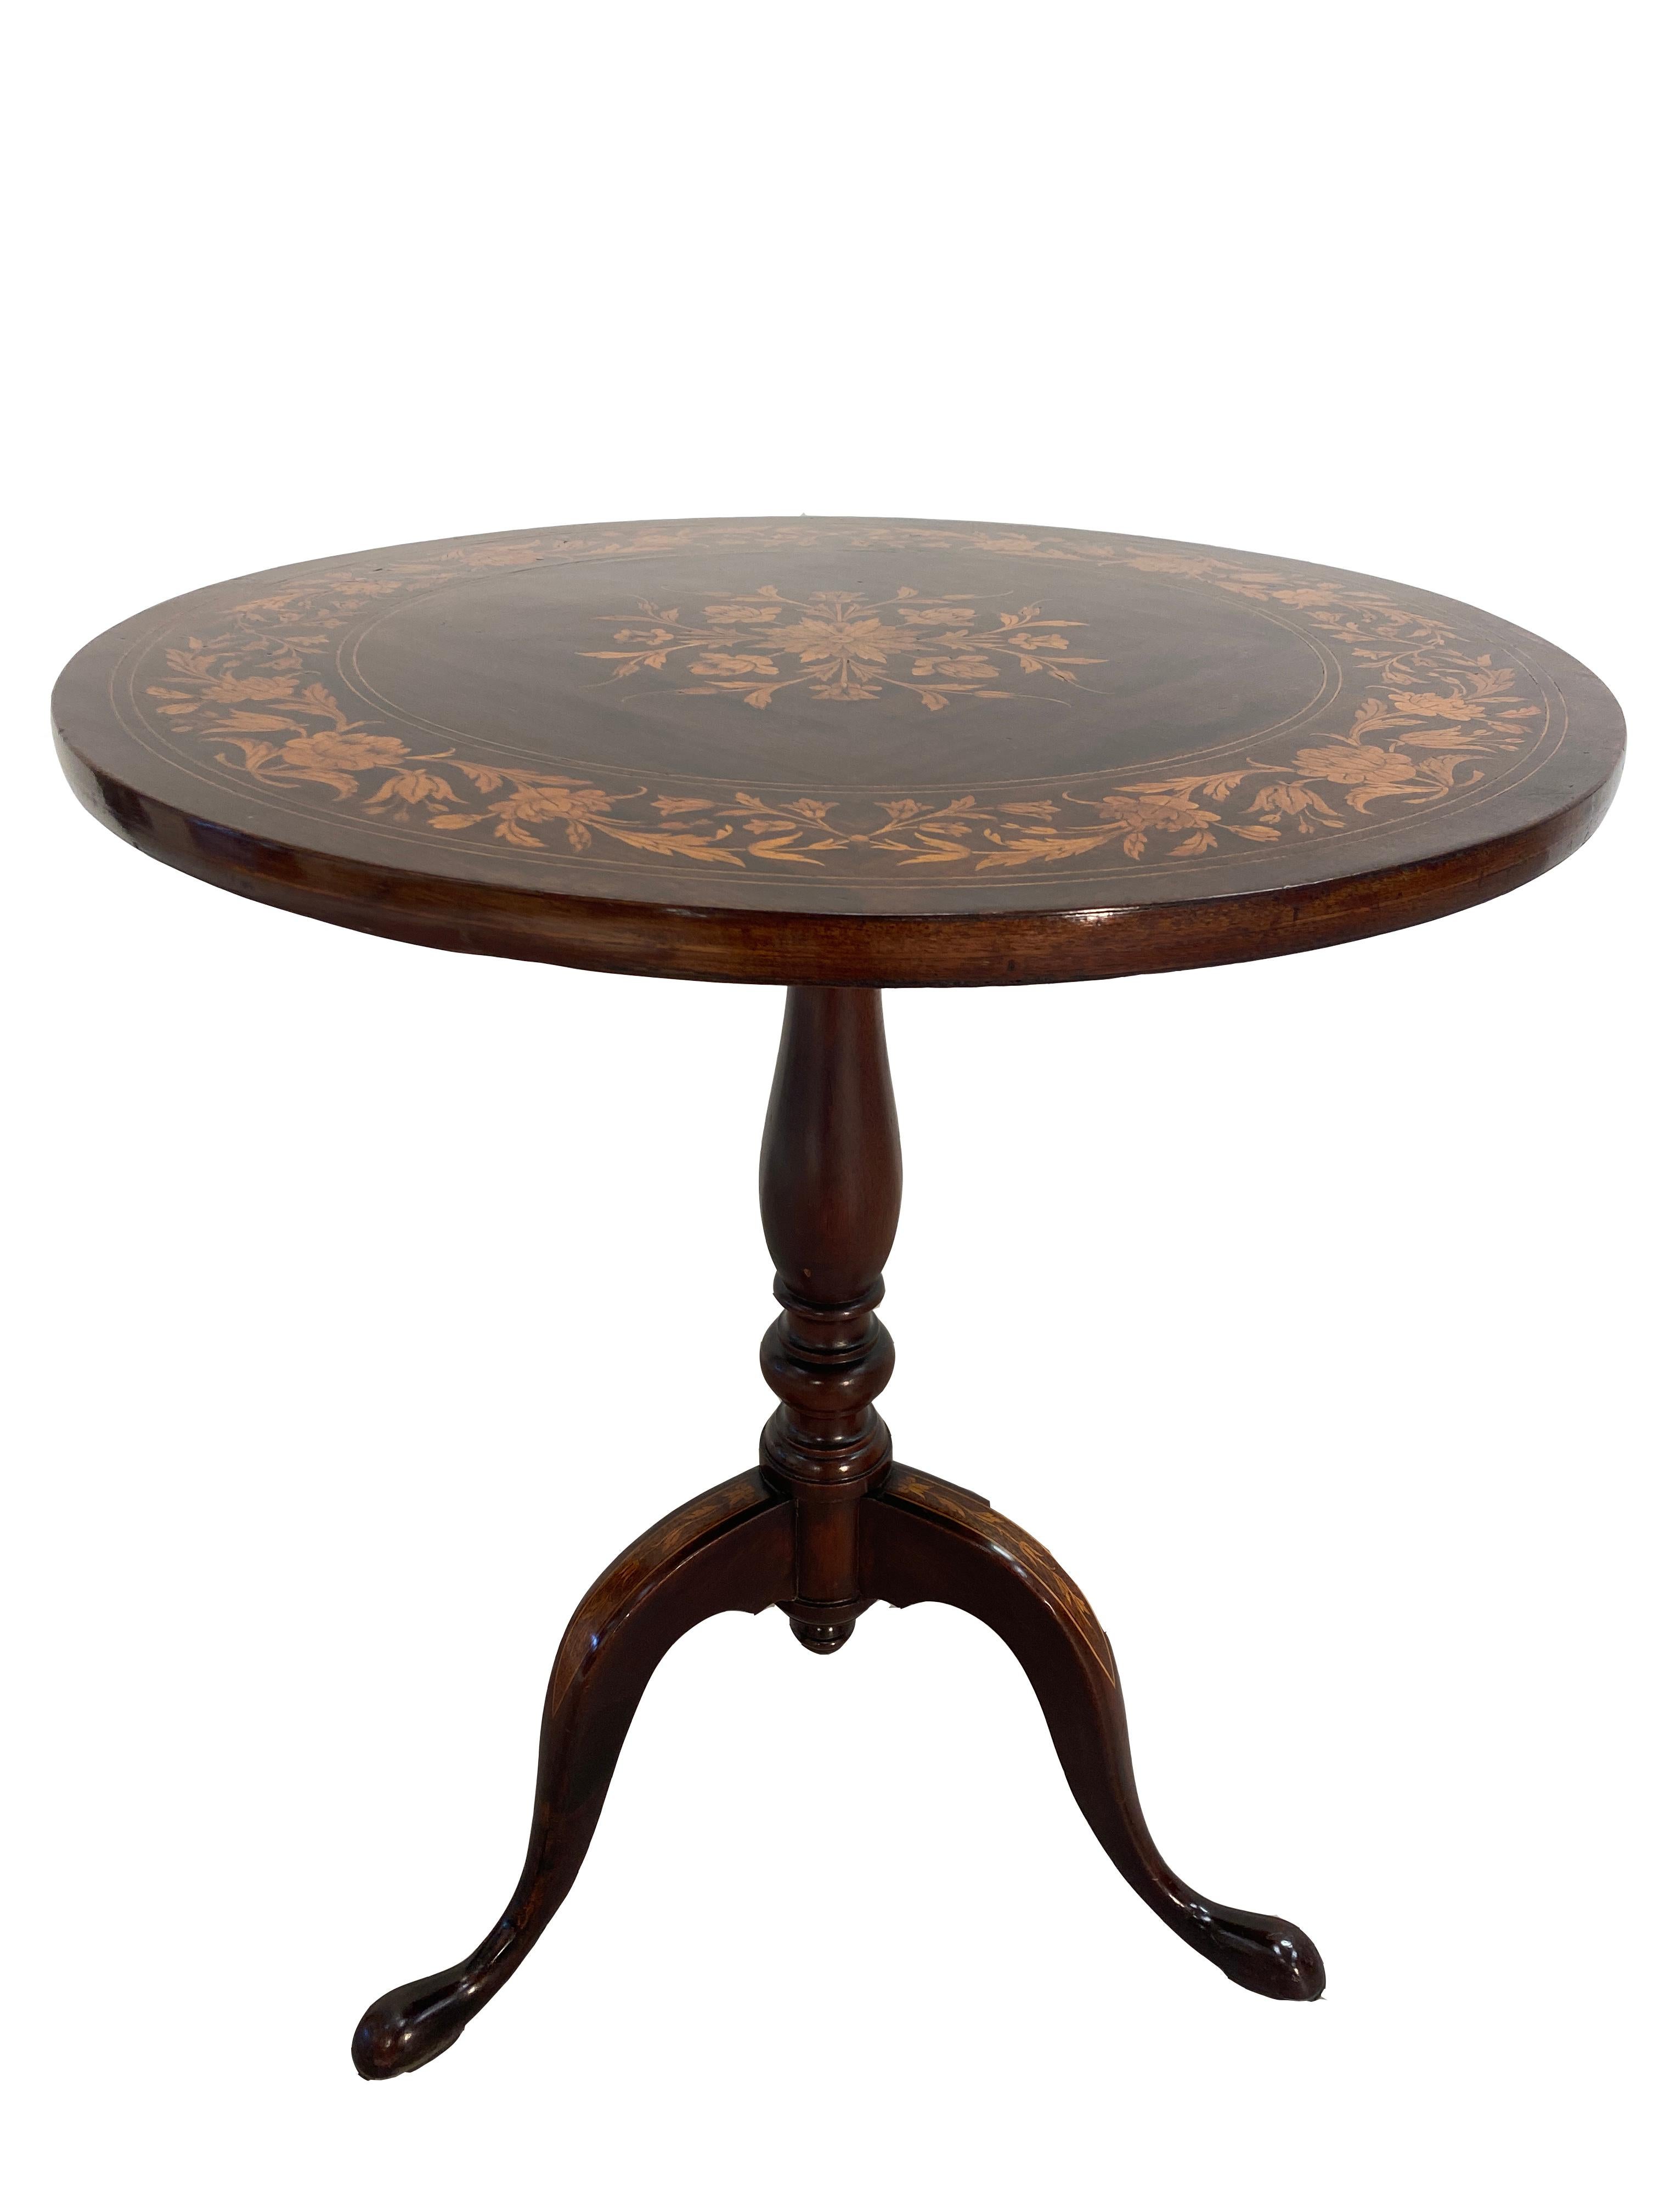 Il s'agit d'une table à trayon en acajou de style Régence anglaise en très bon état avec marqueterie. La table ronde est fixée à un support à trois pieds. Le plateau et les pieds sont ornés d'une marqueterie. La finition est hautement polie. Le